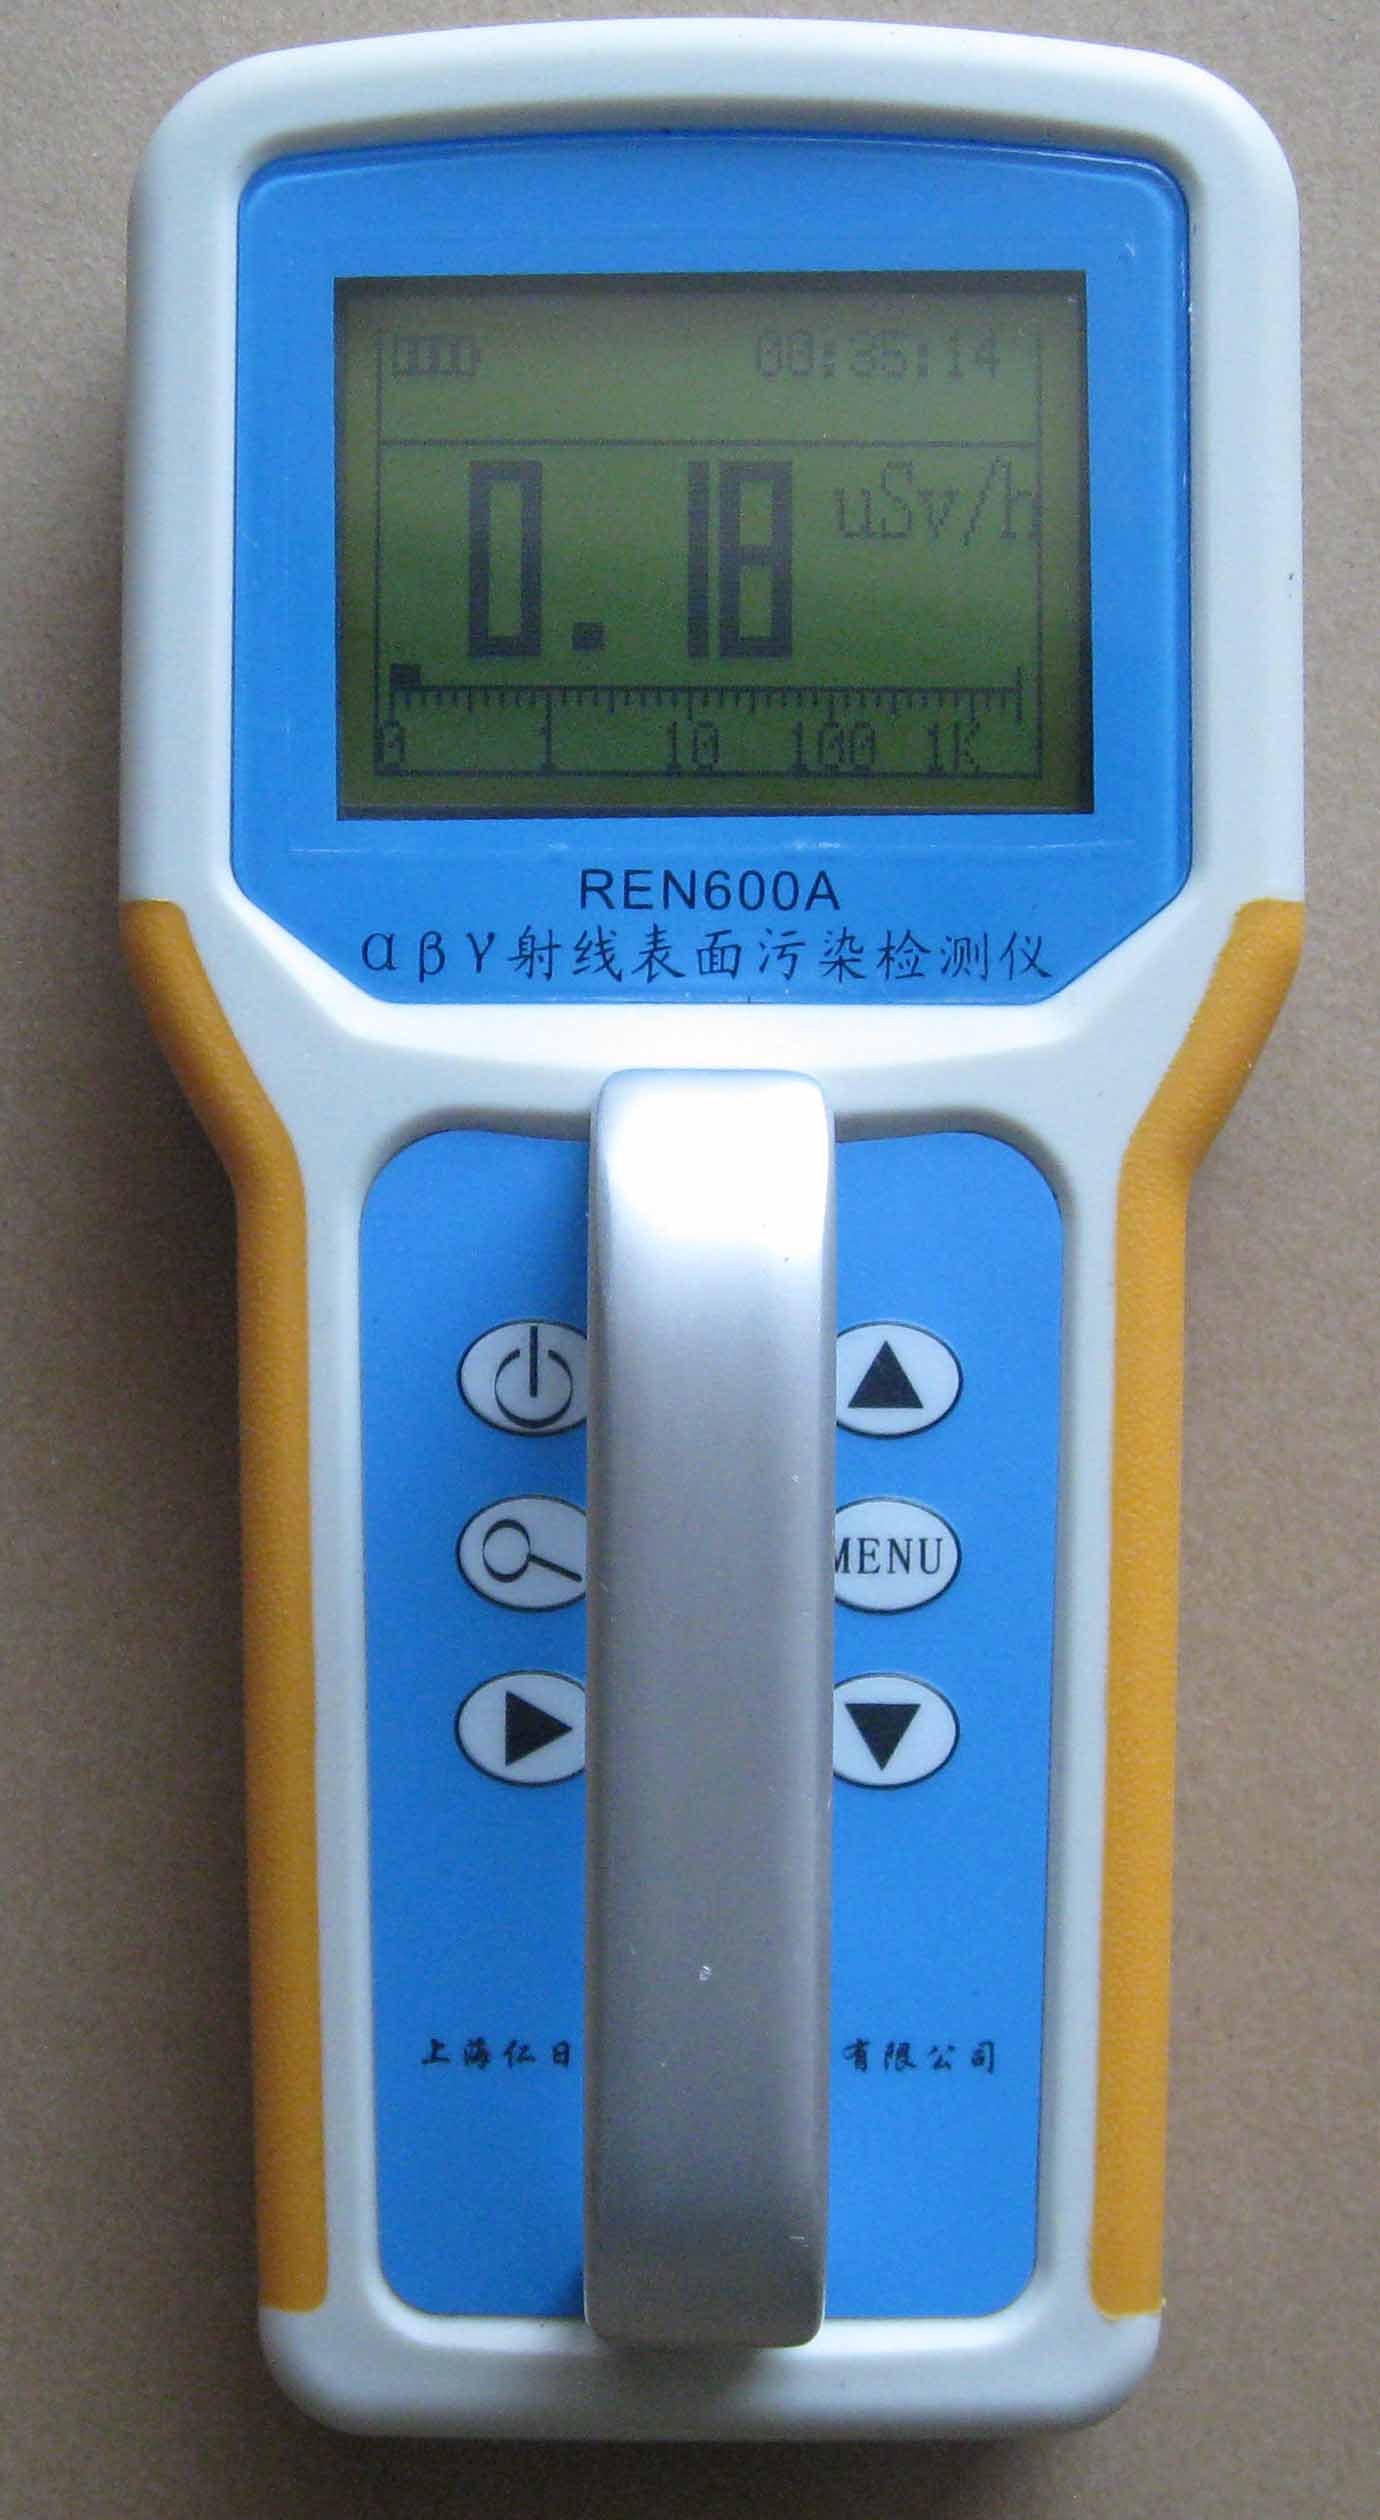 REN600A 表面沾污监测仪